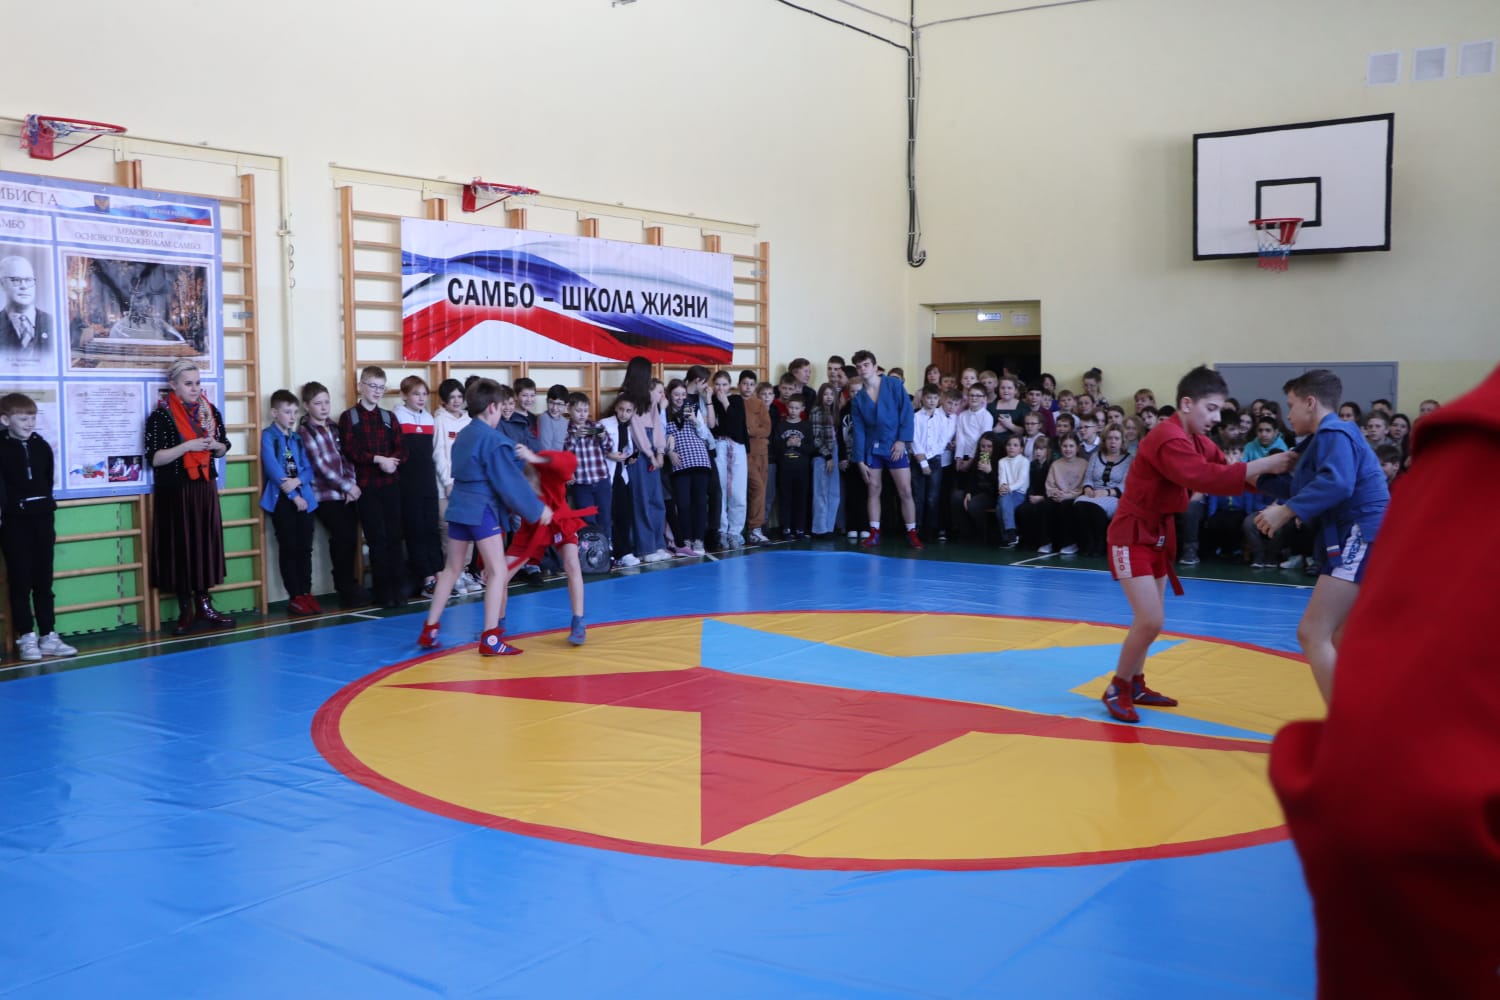 Еще одно образовательное учреждение Ярославской области подключилось к проекту «Самбо в школу»